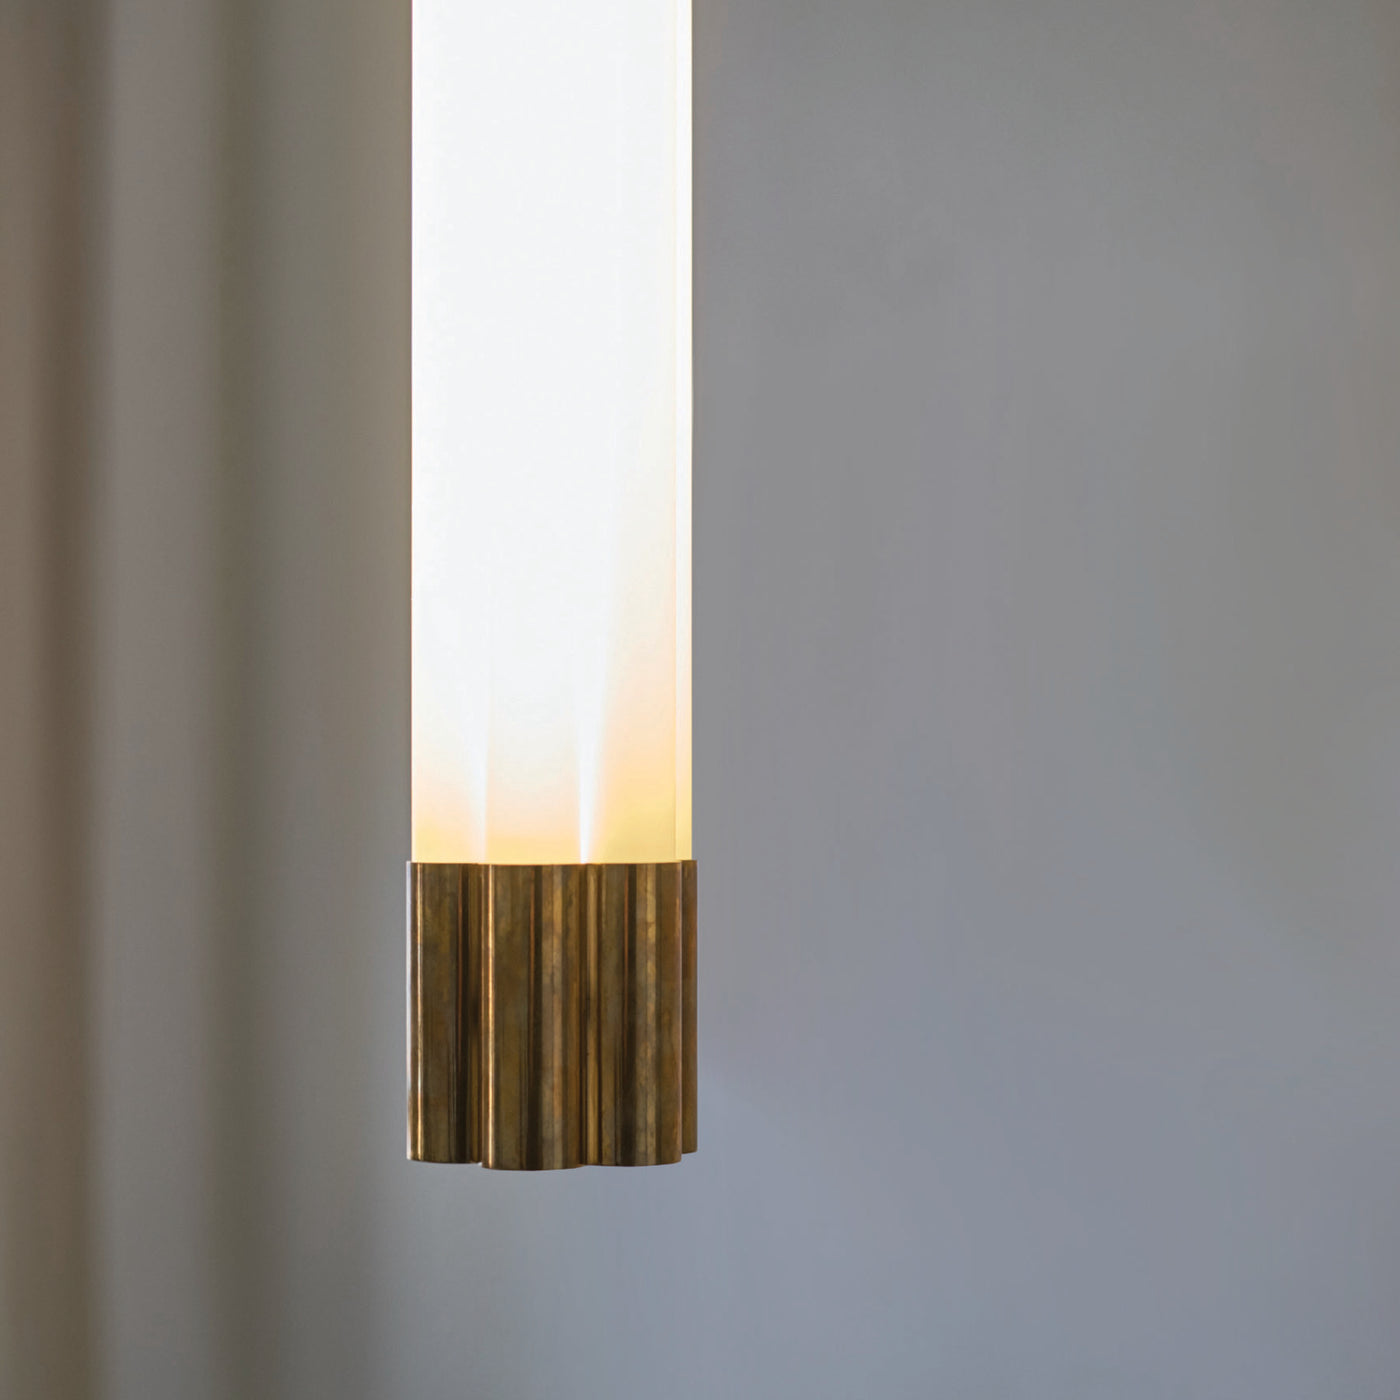 Unique Seven Tube Light – Hanging Version